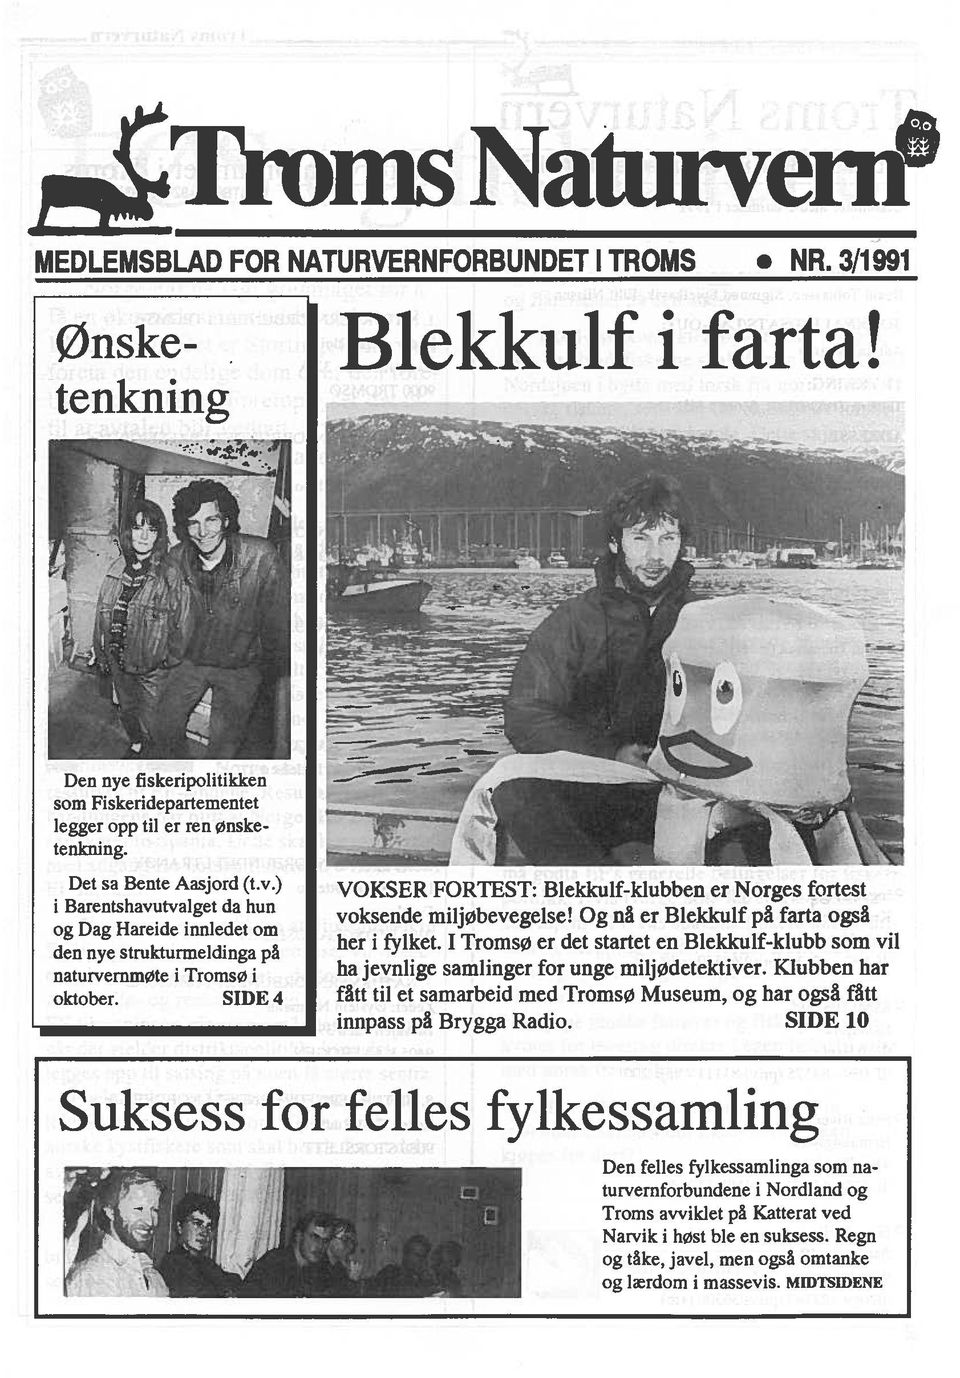 SIDE 4 VOKSER FORTEST: Blekkuif-klubben er Norges fortest voksende miljøbevegelse! Og nä er Blekkulf pa farta ogsa her i fyiket.